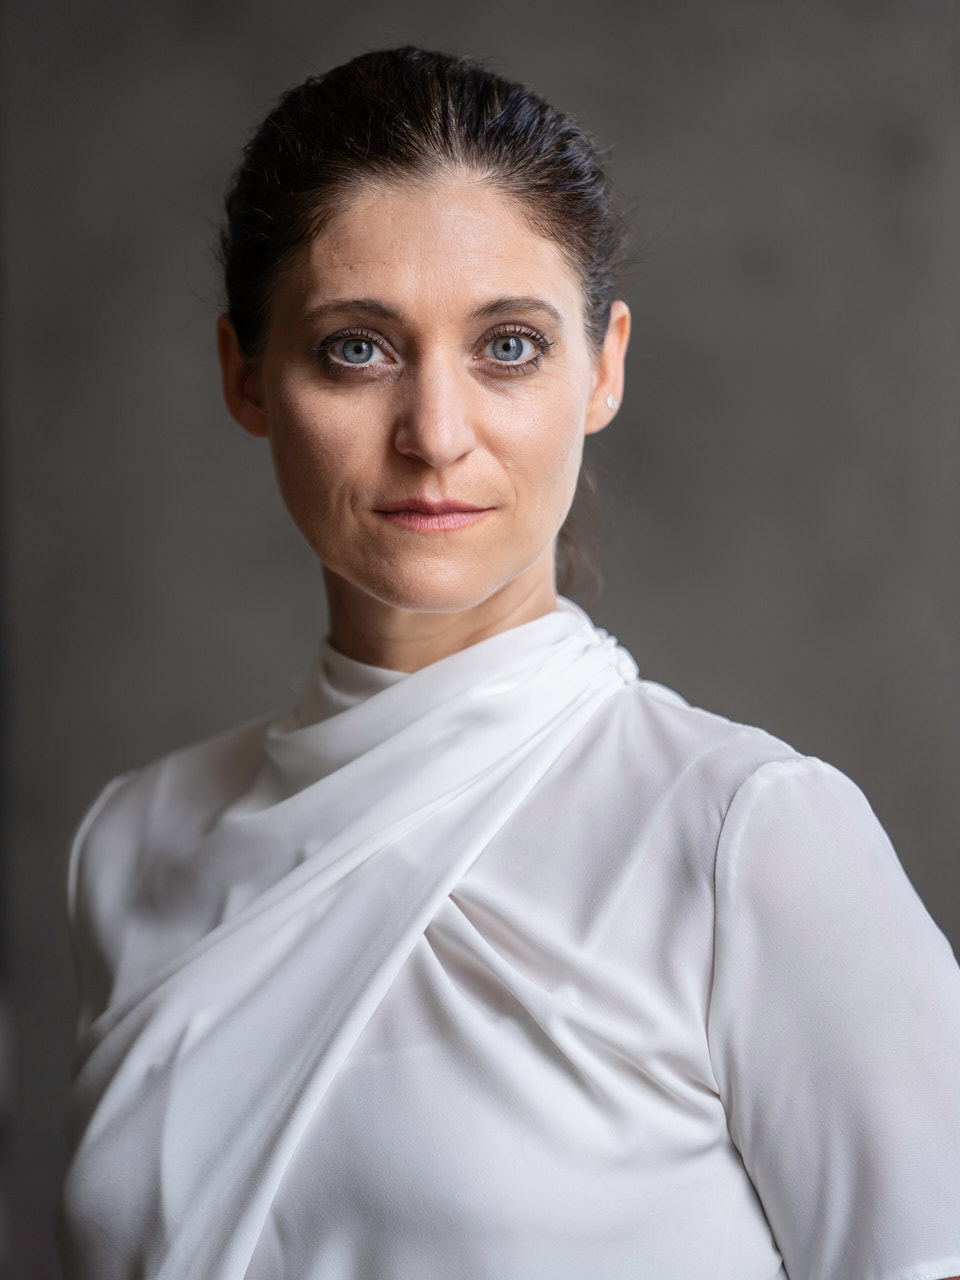 Sonja Beißwenger, Schauspielerin - Agentur Engelhardt